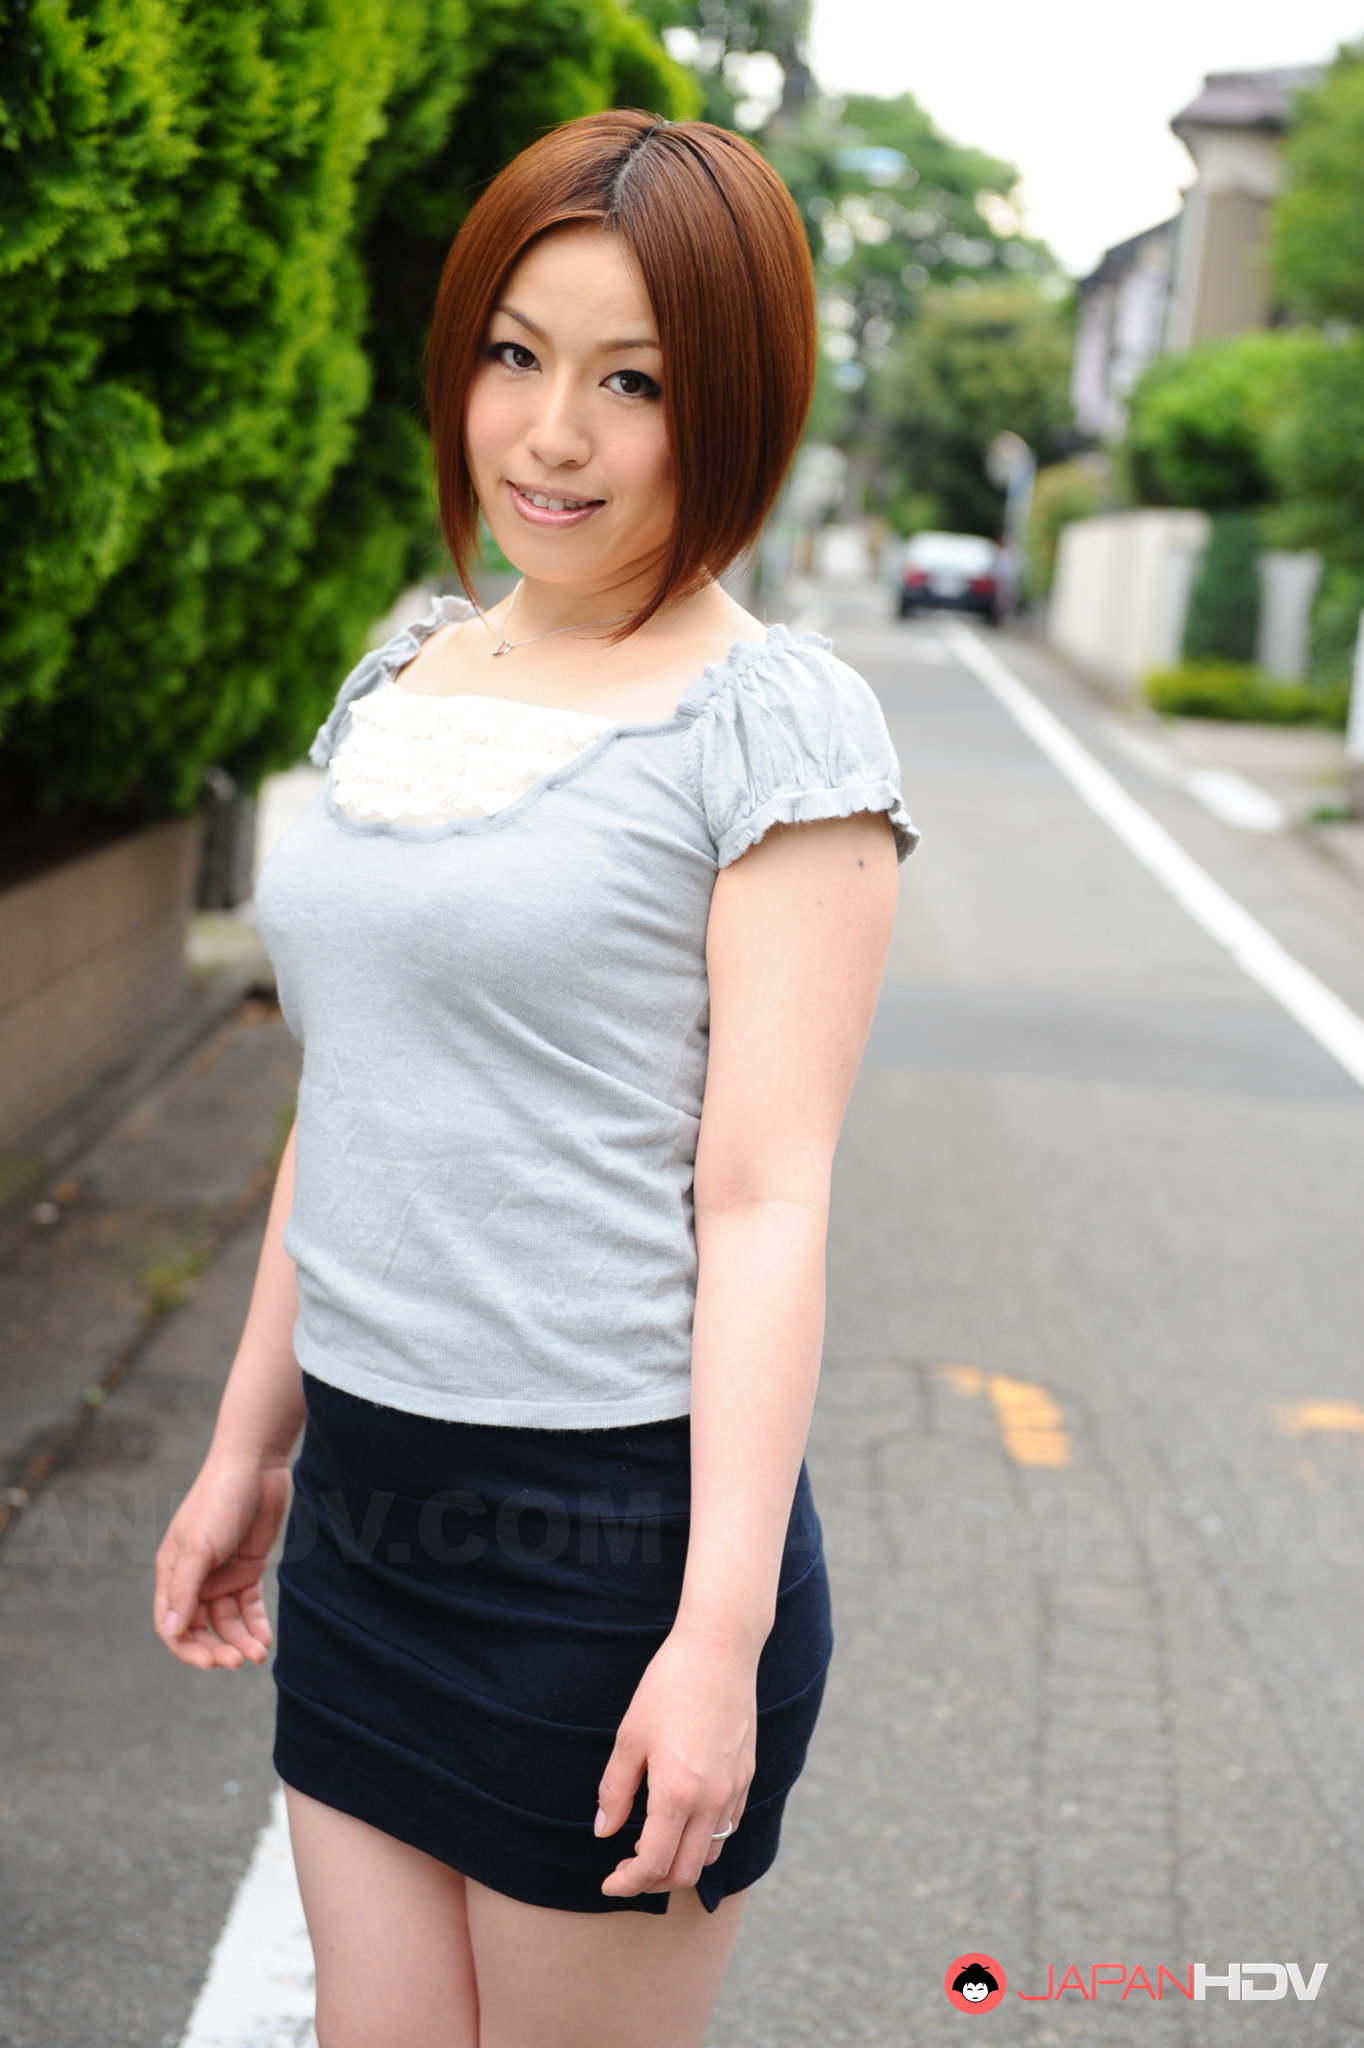 Hot Asian Lady Hiromi Tominaga Loves Posing